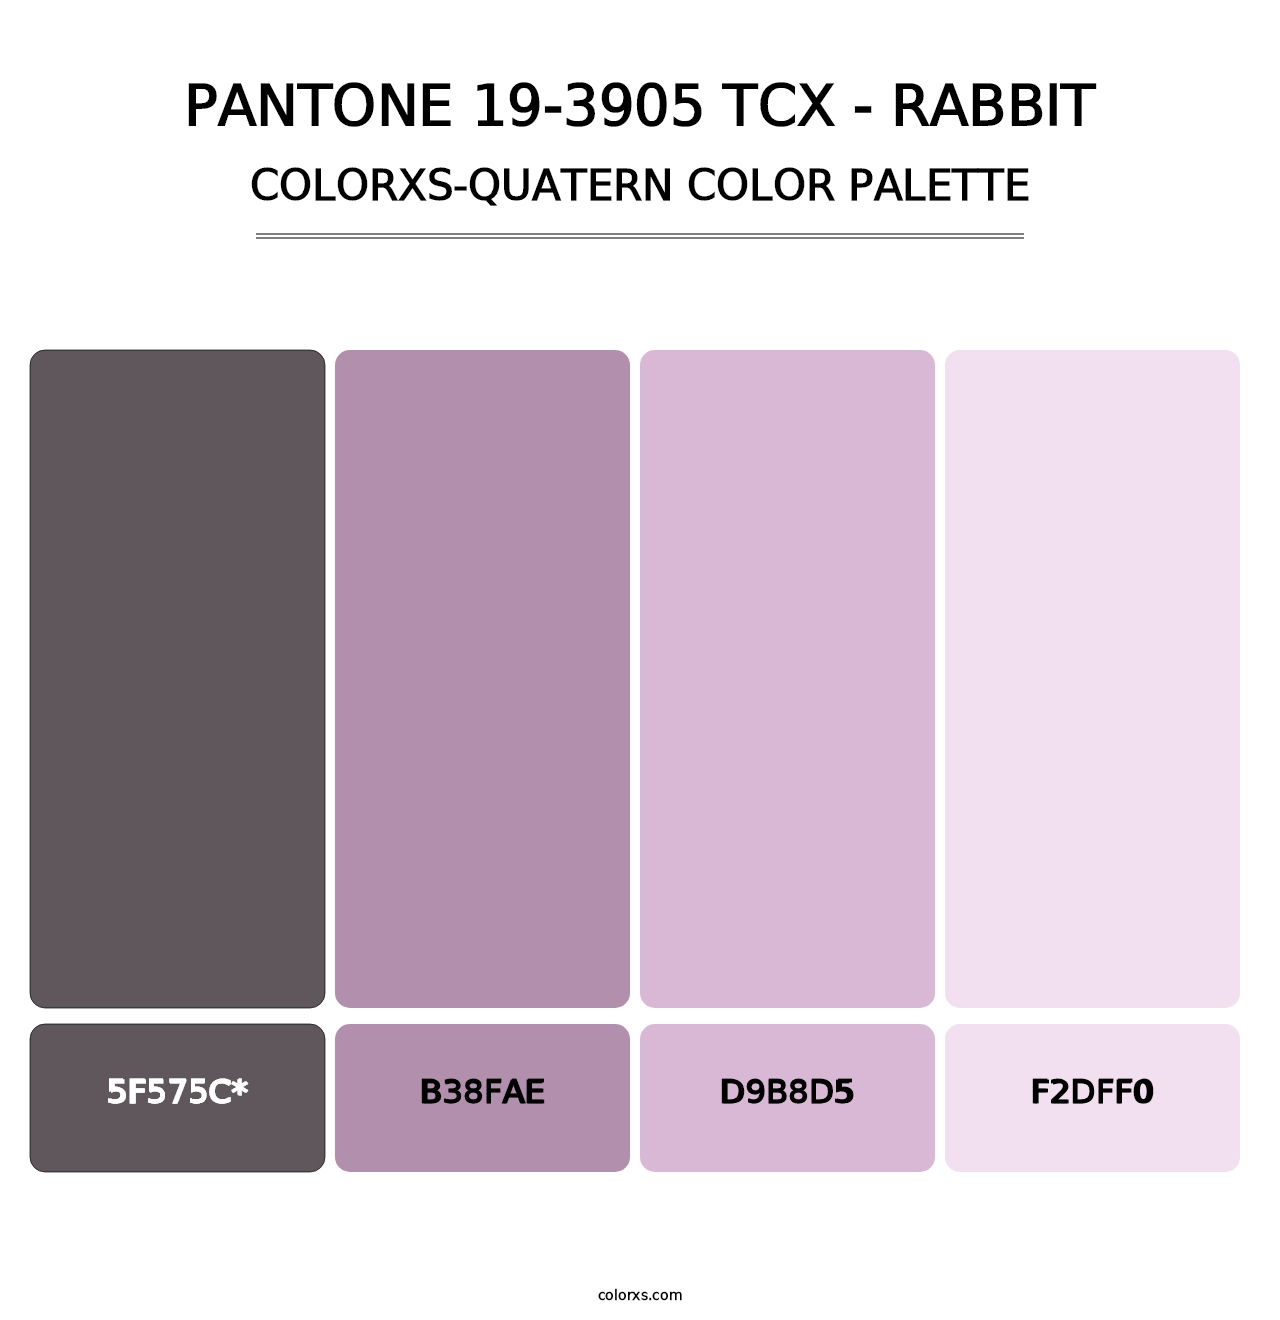 PANTONE 19-3905 TCX - Rabbit - Colorxs Quatern Palette